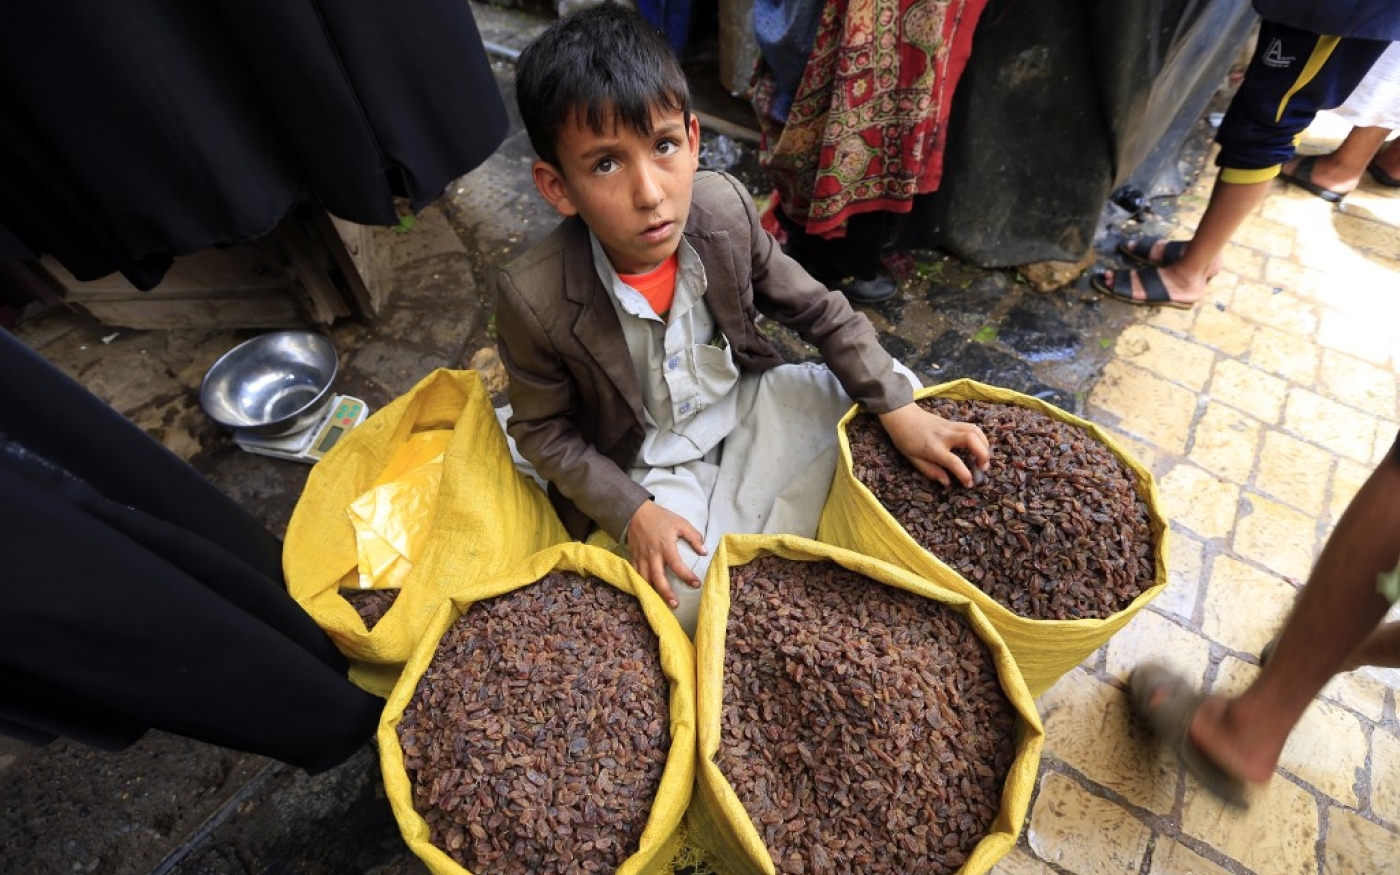 Un petit Yéménite vend des fruits secs dans un marché de la capitale, Sanaa, en juillet 2020 (AFP)